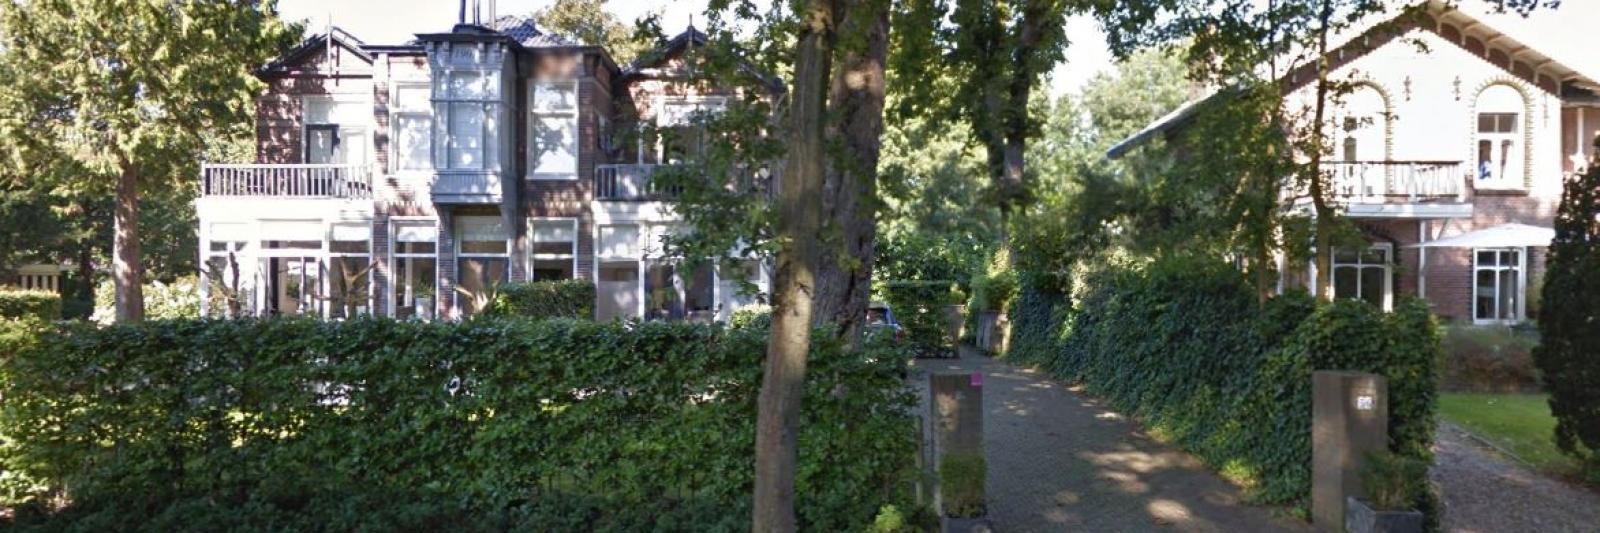 ademen in de buurt Verst Sonja Bakker koopt miljoenenvilla in Bergen - NH Nieuws